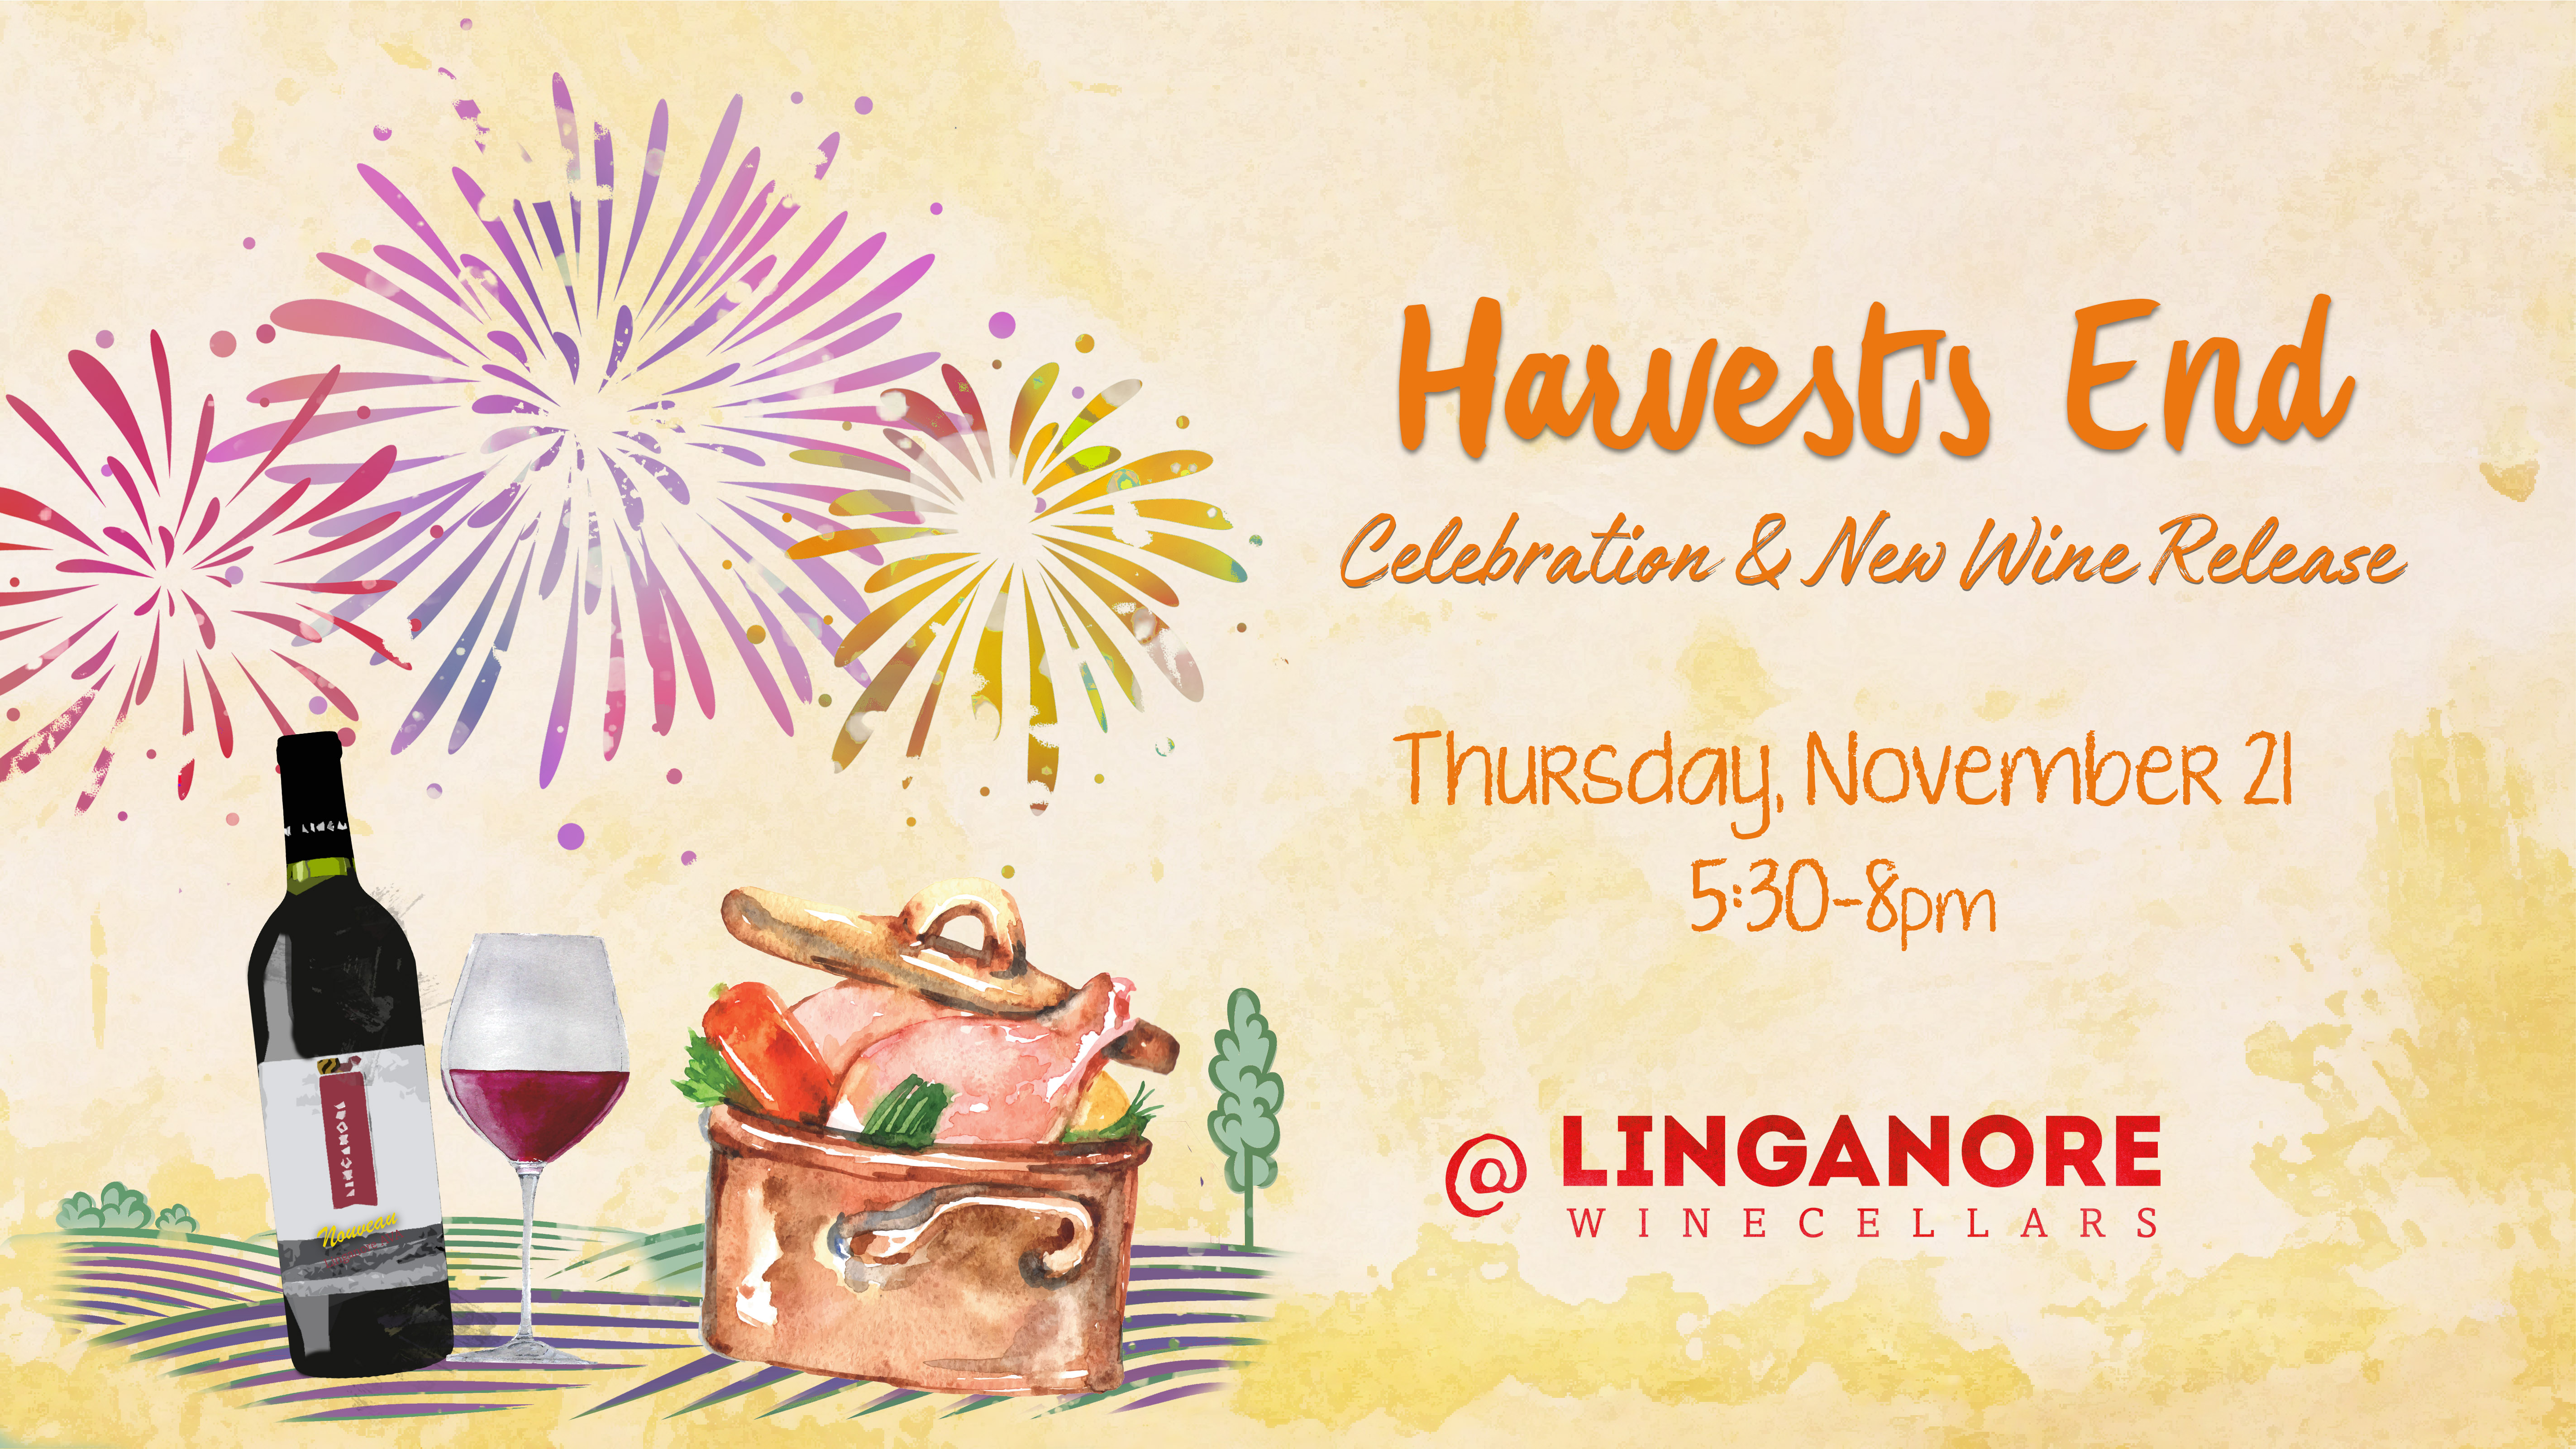 harvest end celebration event announcement